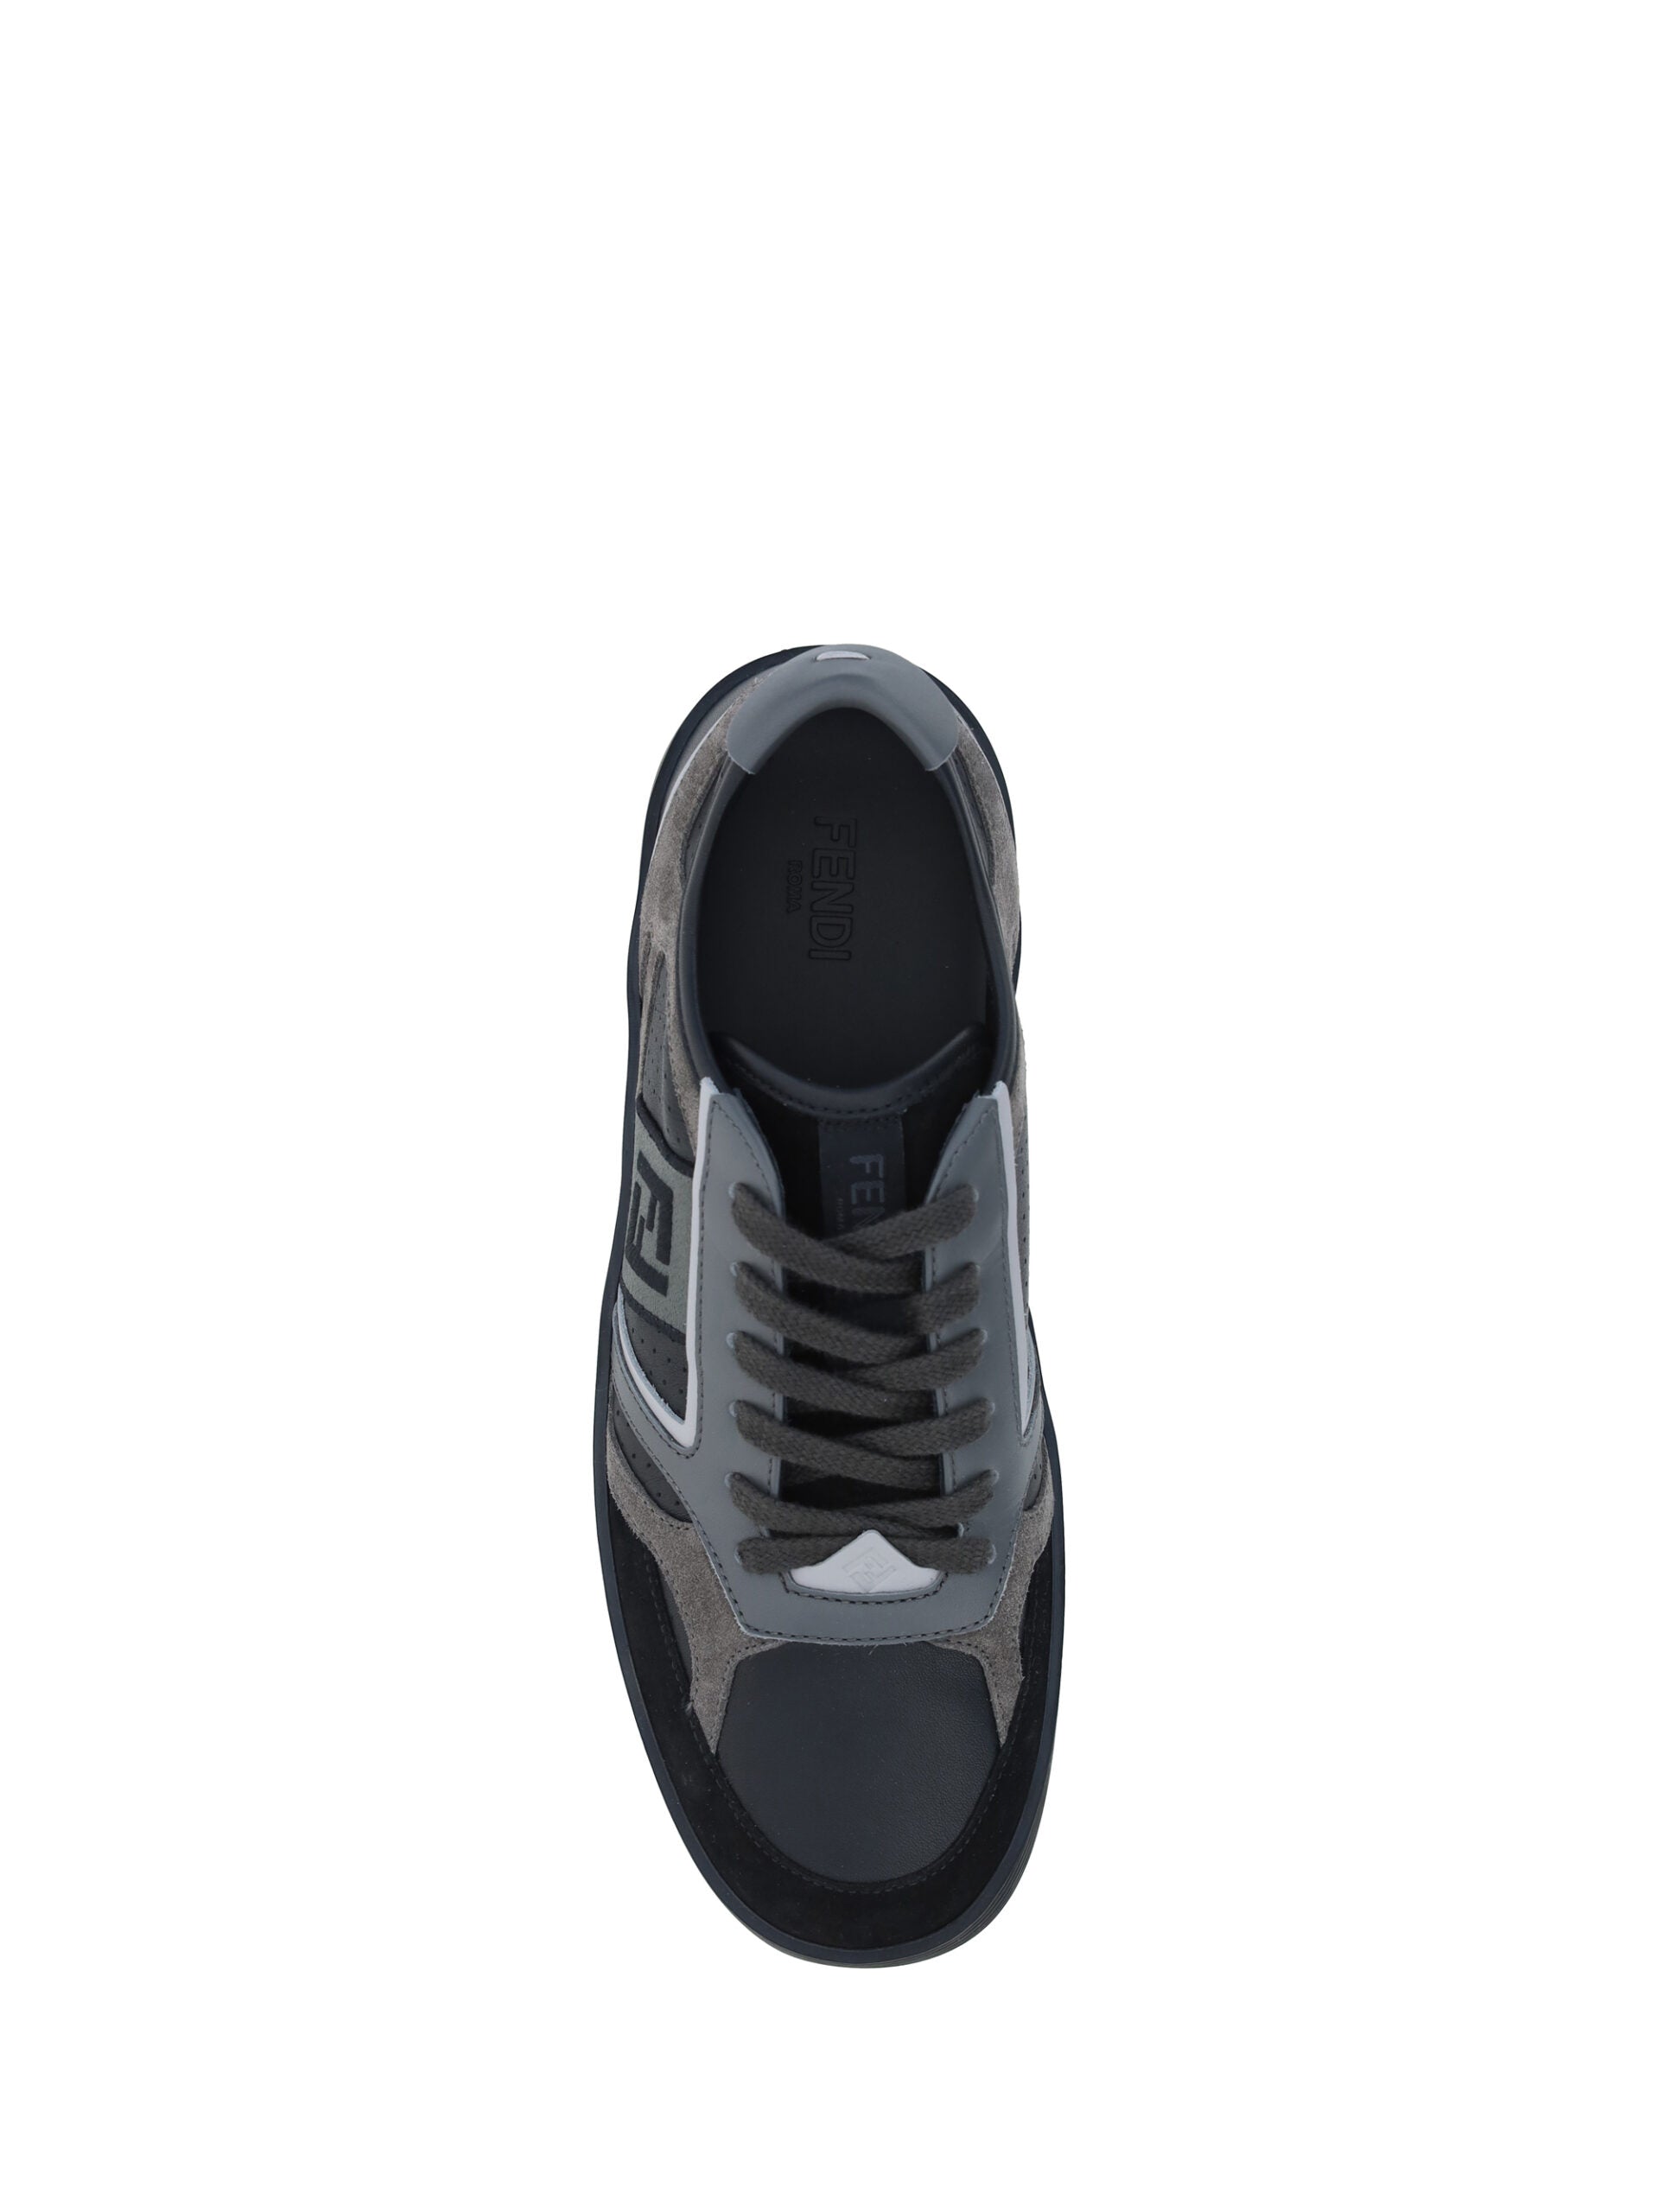 Fendi Black Leather Men Sneakers | Fashionsarah.com